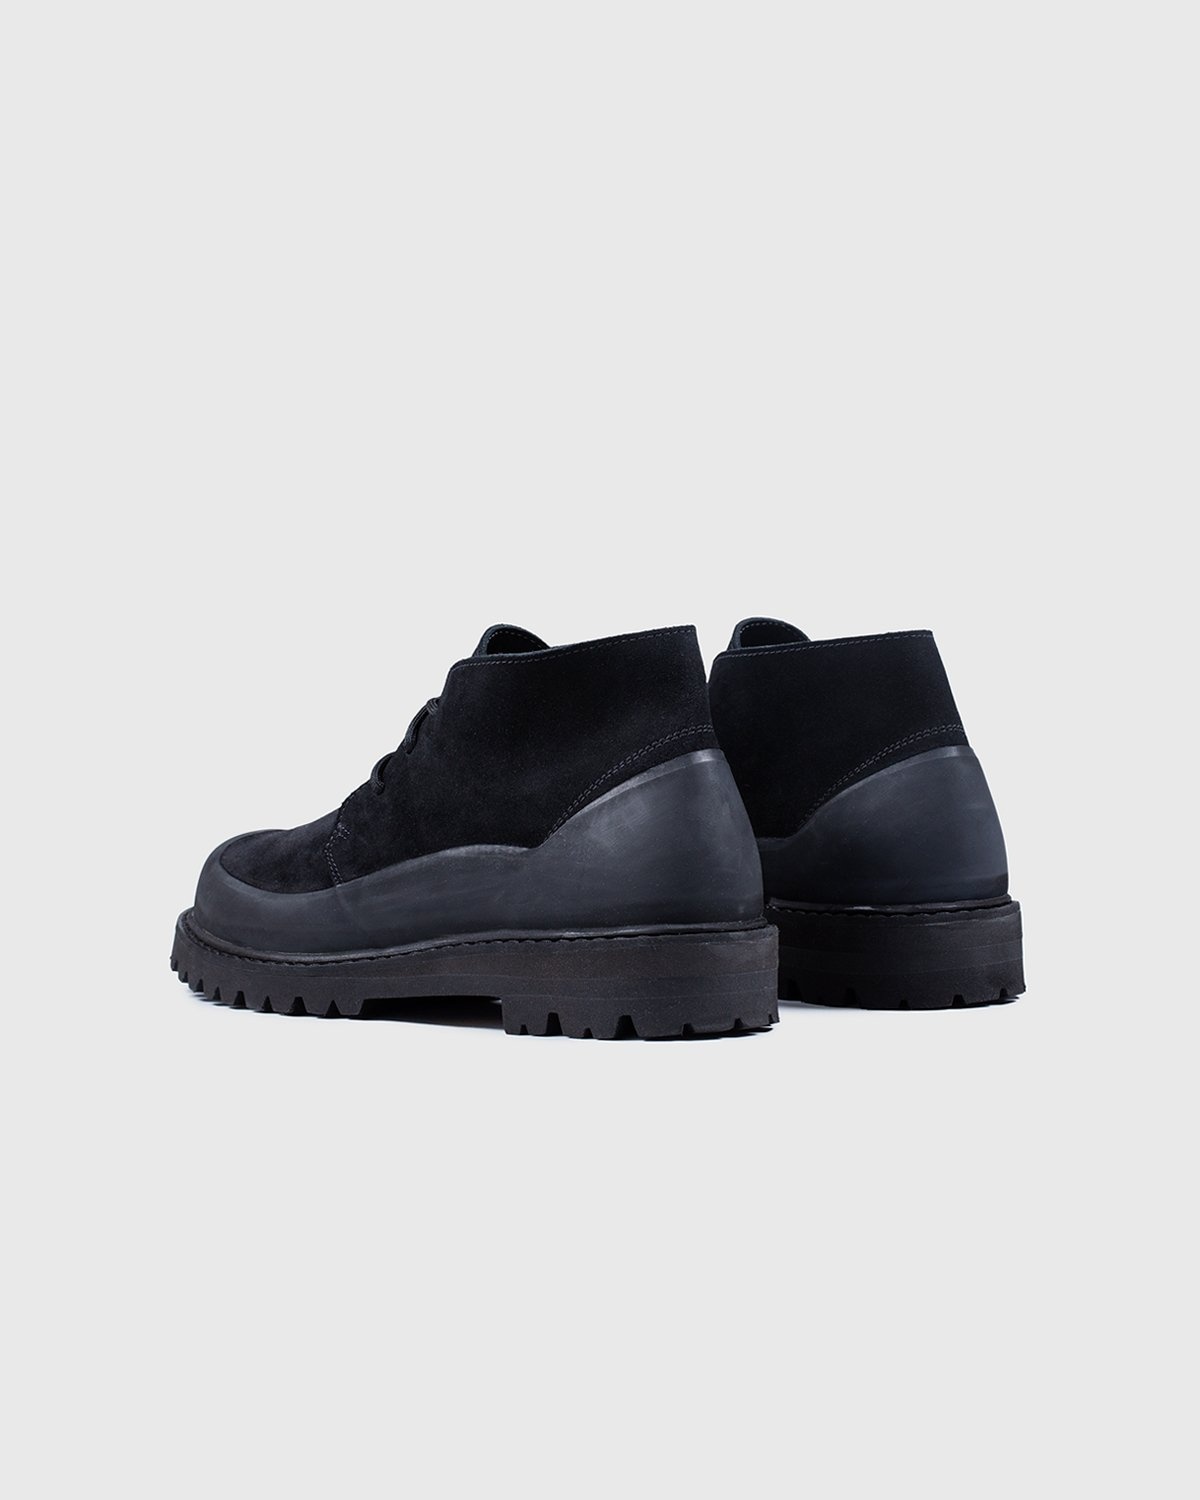 Diemme – Asiago Black Suede - Shoes - Black - Image 3